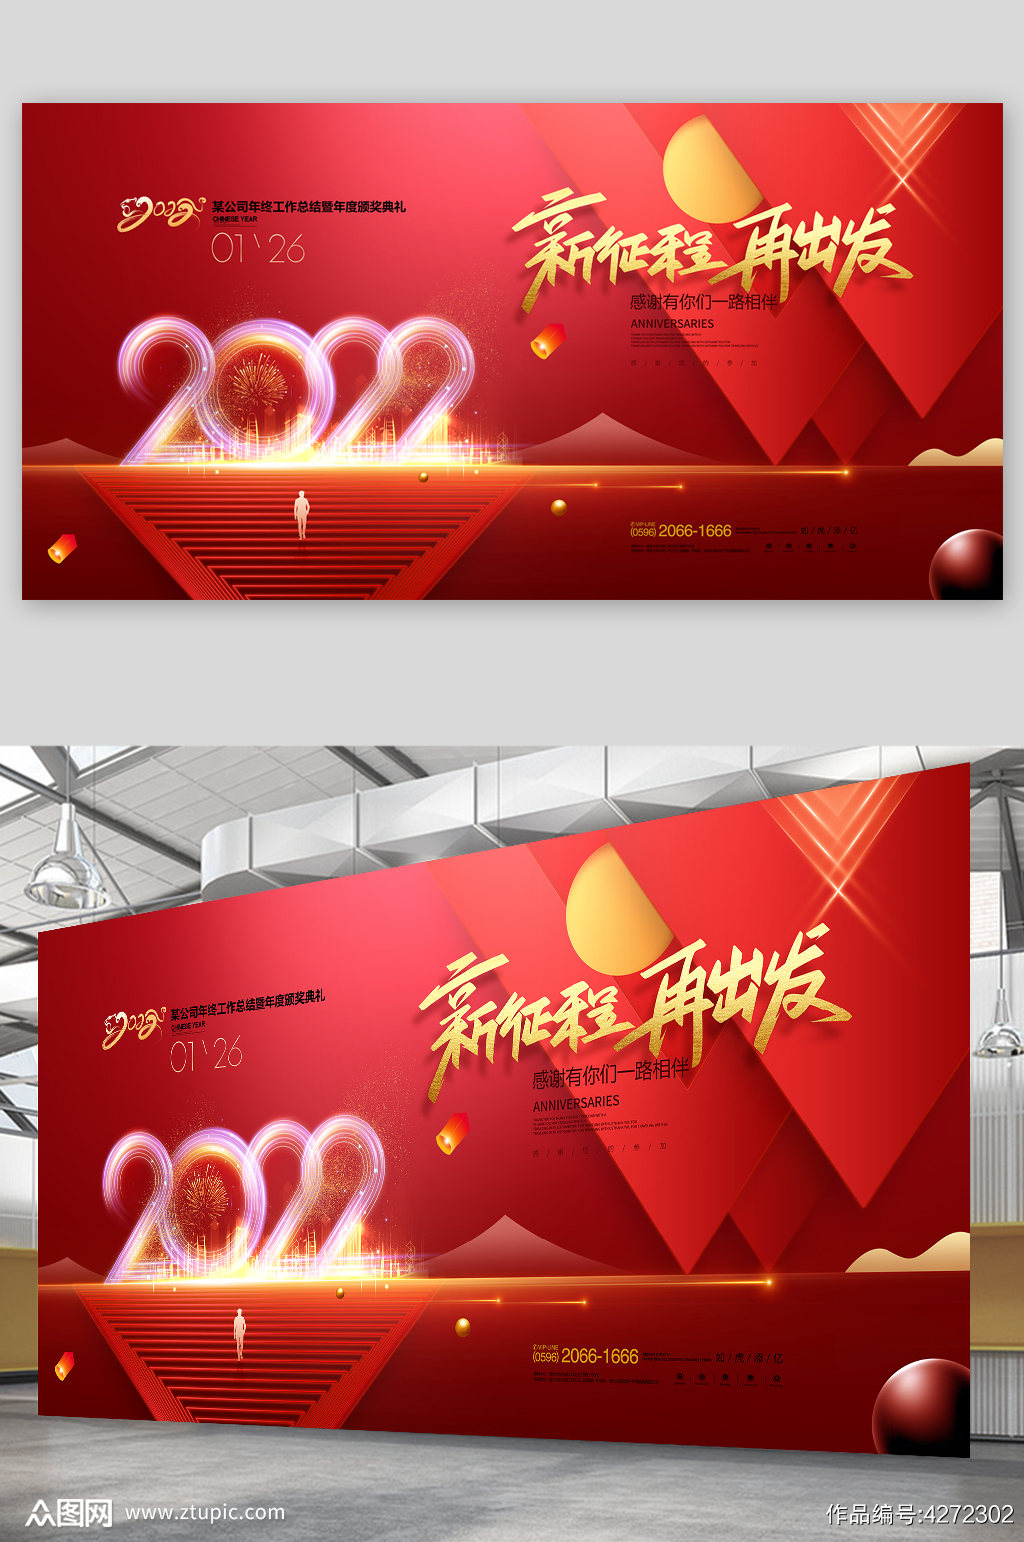 2022年会年终盛典年度盛典颁奖典礼虎年 海报背景展板素材